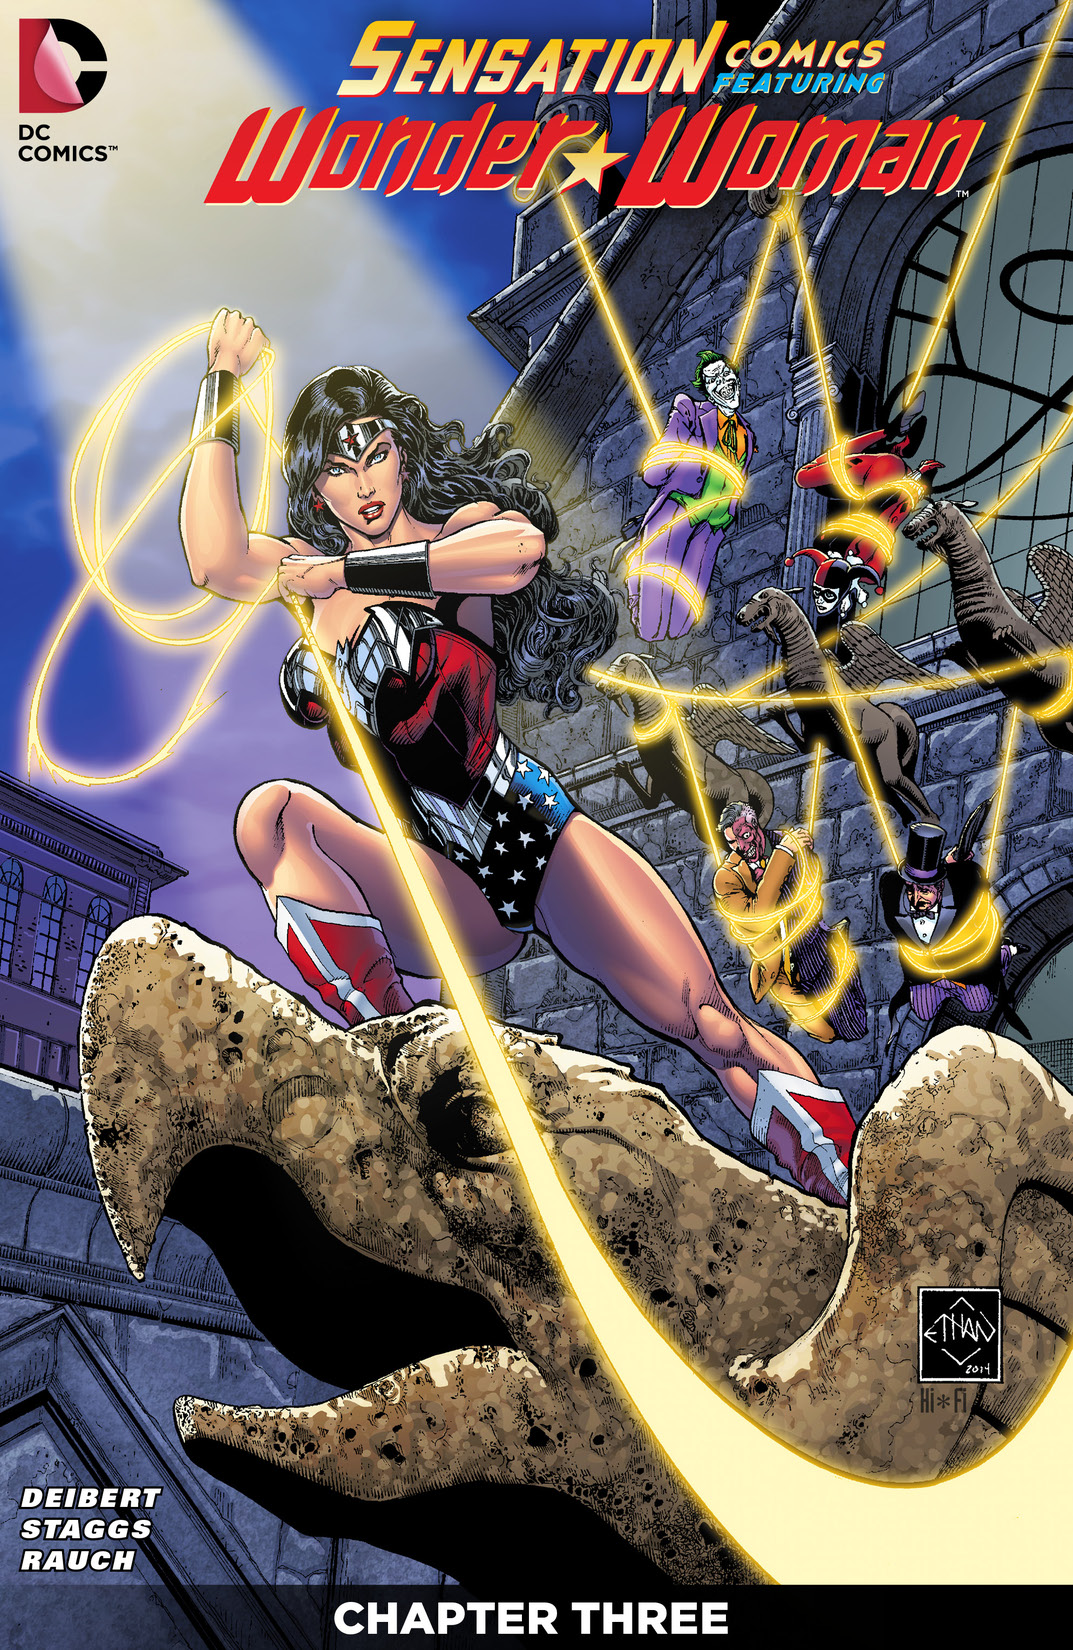 Sensation Comics Featuring Wonder Woman #3 preview images